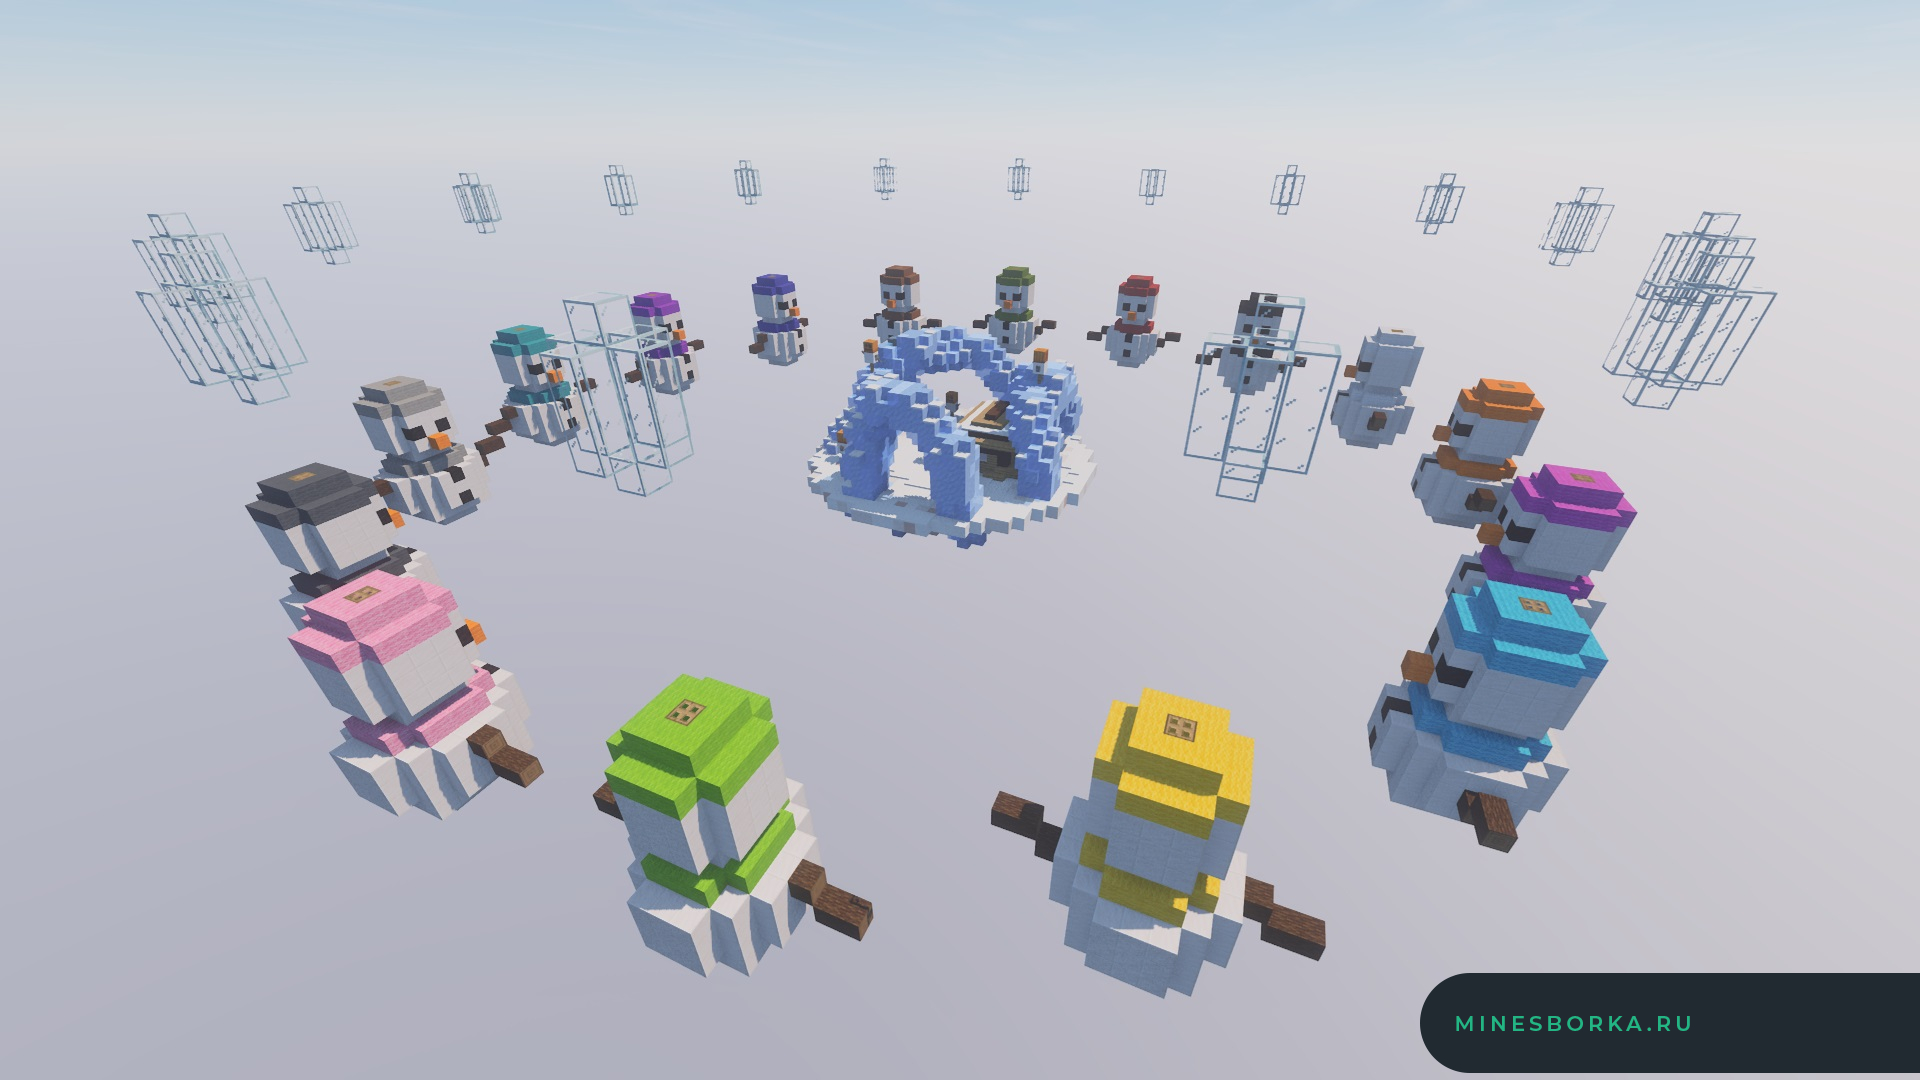 10 КАРТ | Великолепные арены мини-игры SkyWars для сервера Minecraft 1.12+